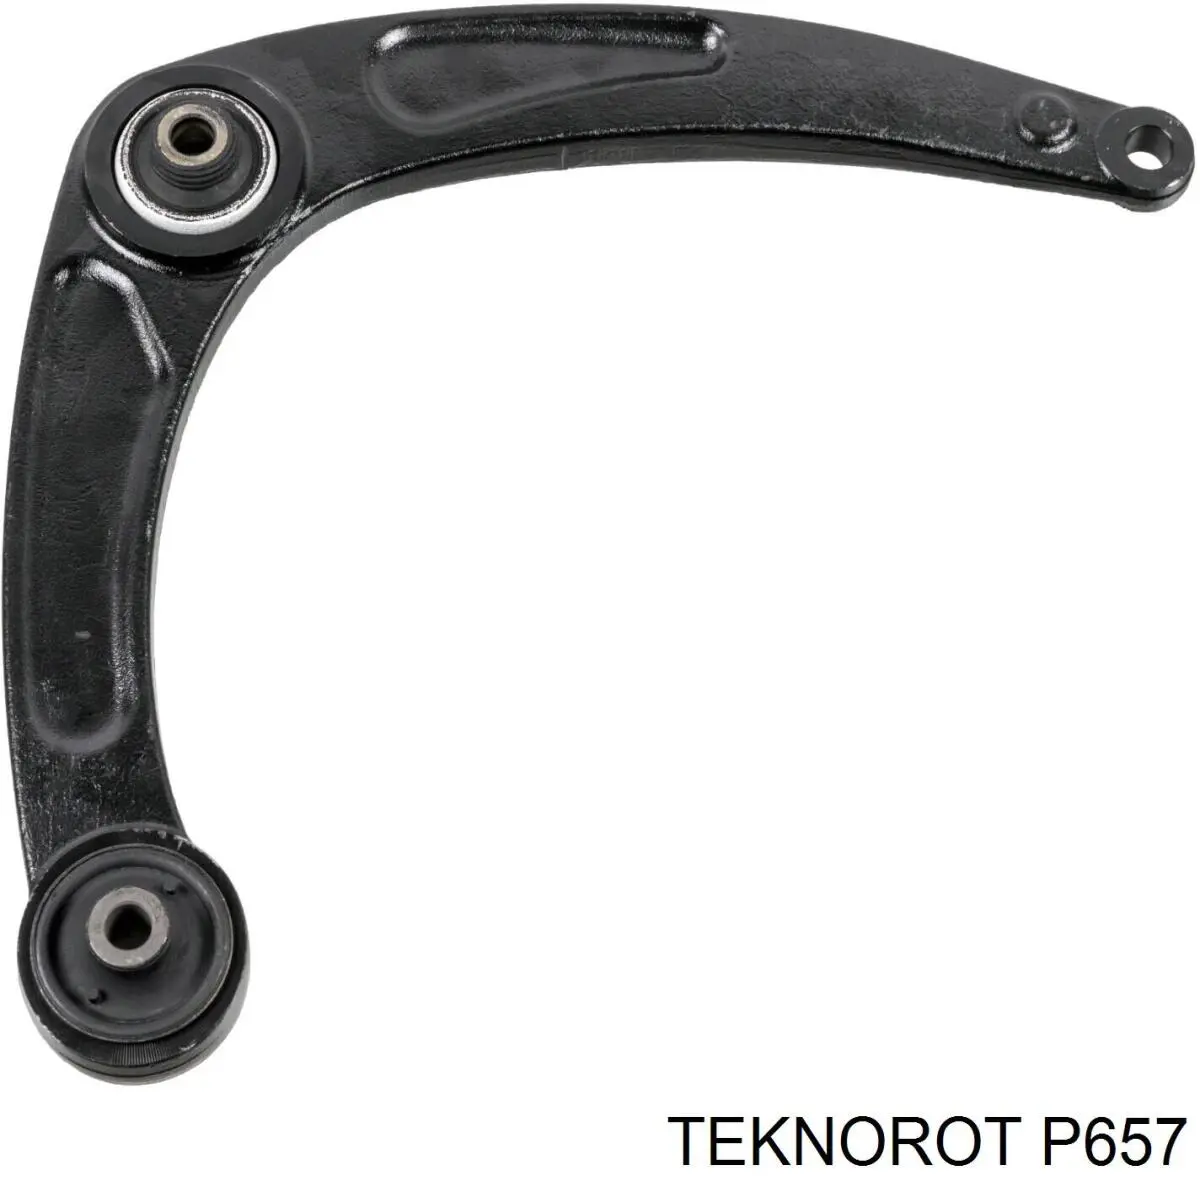 P-657 Teknorot barra oscilante, suspensión de ruedas delantera, inferior derecha